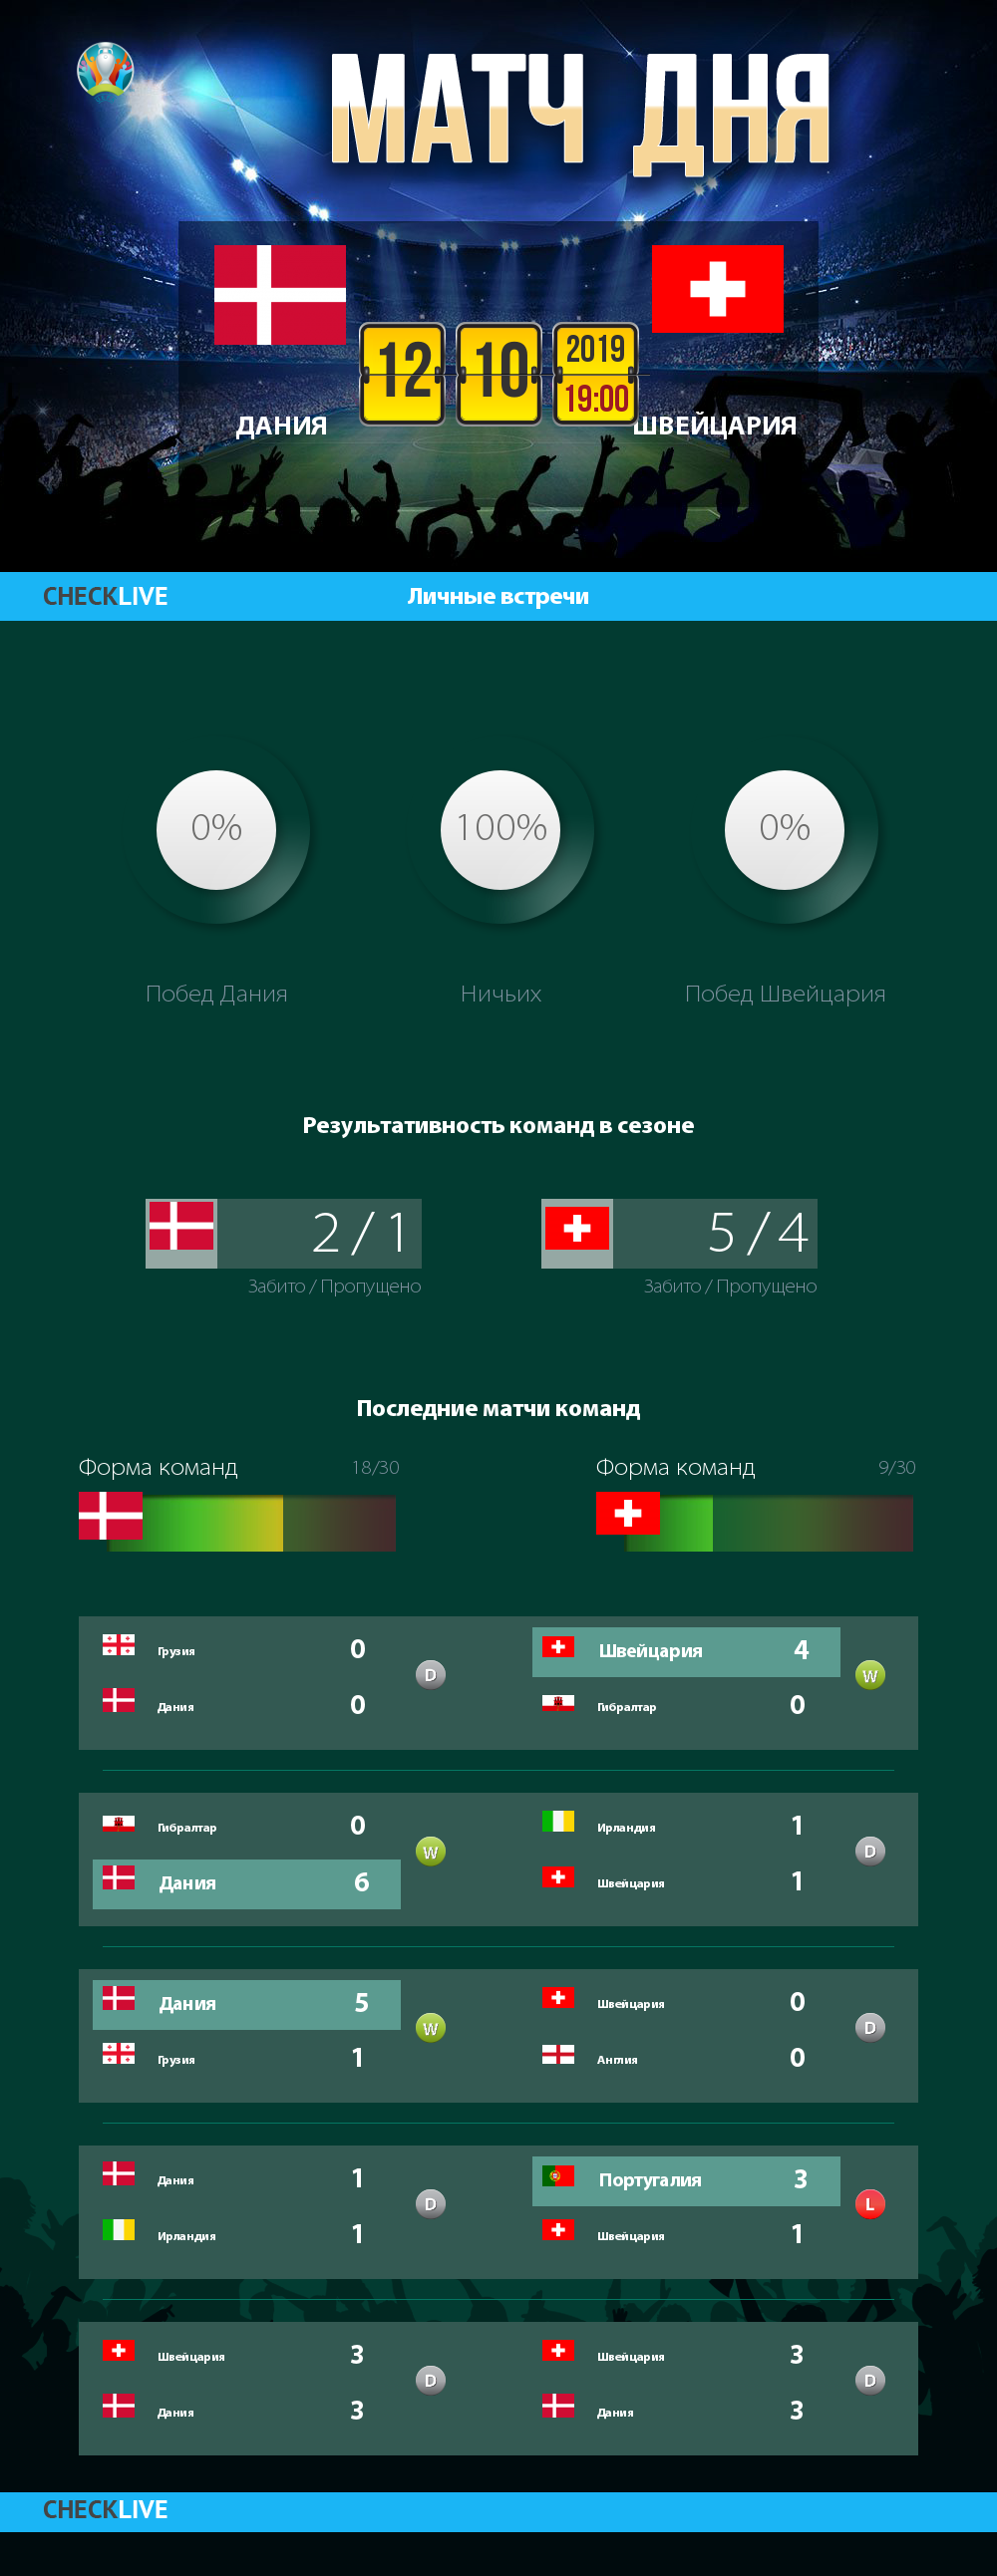 Инфографика Дания и Швейцария матч дня 12.10.2019